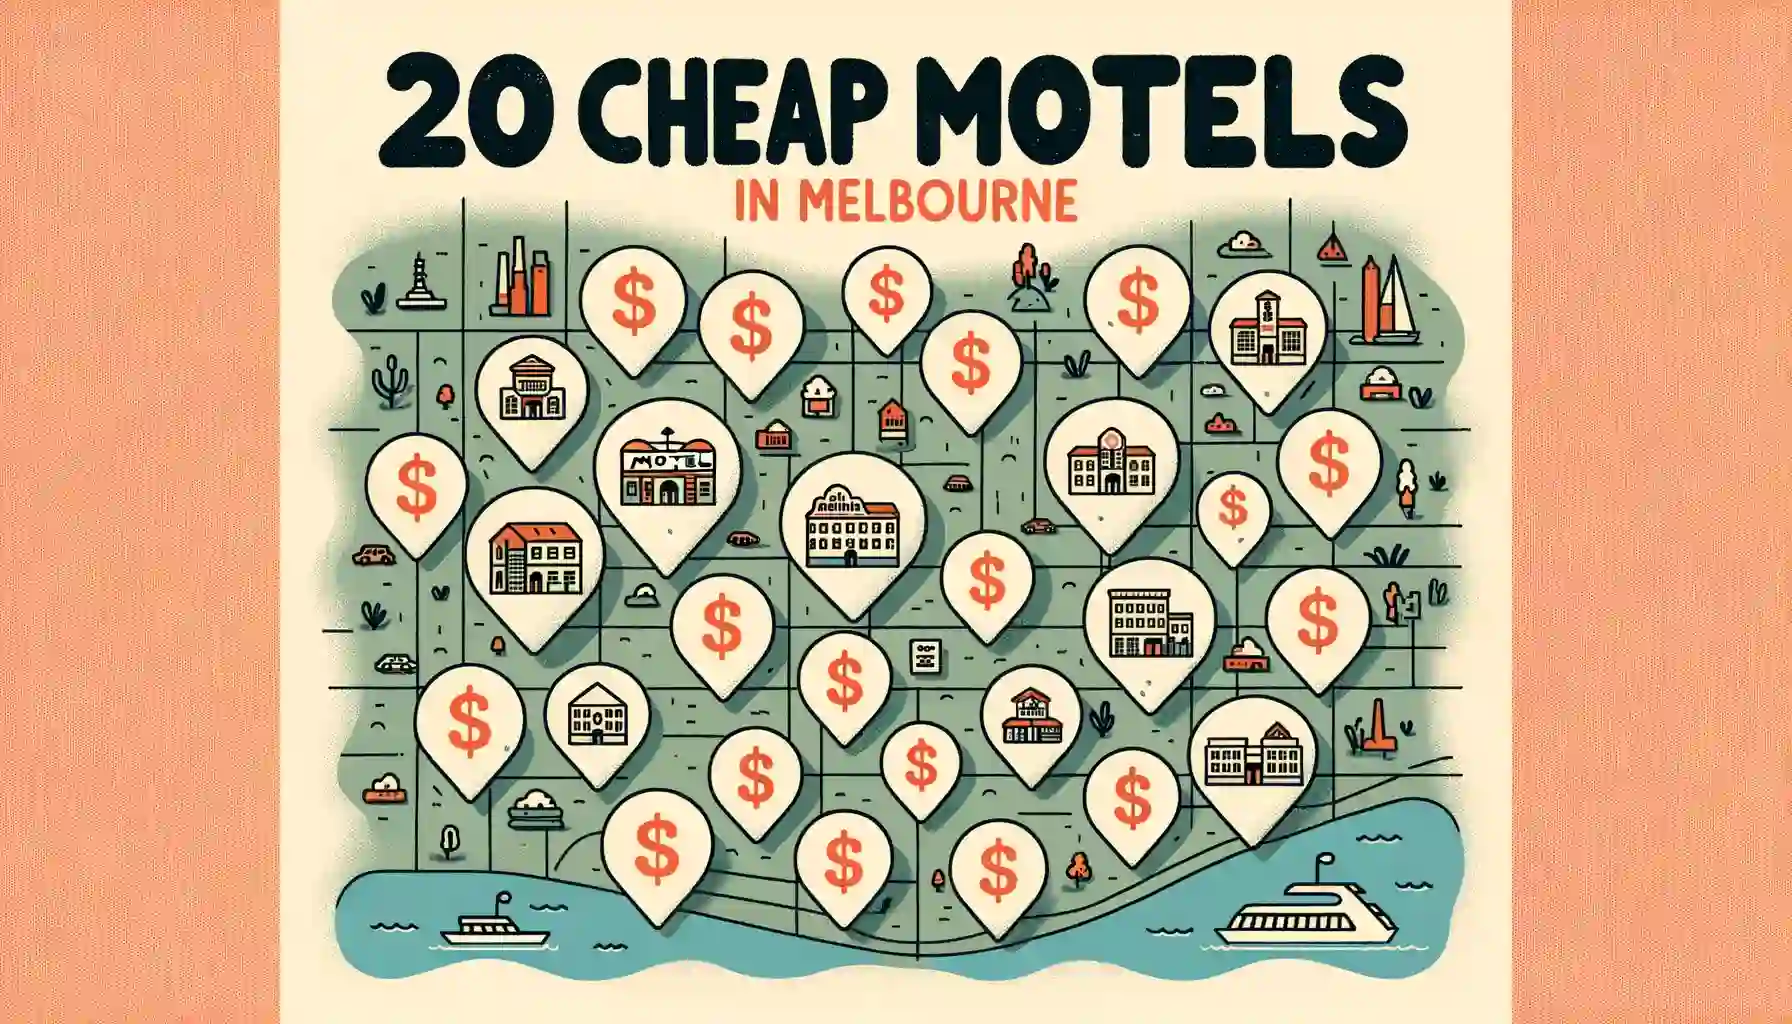 Motels in Melbourne